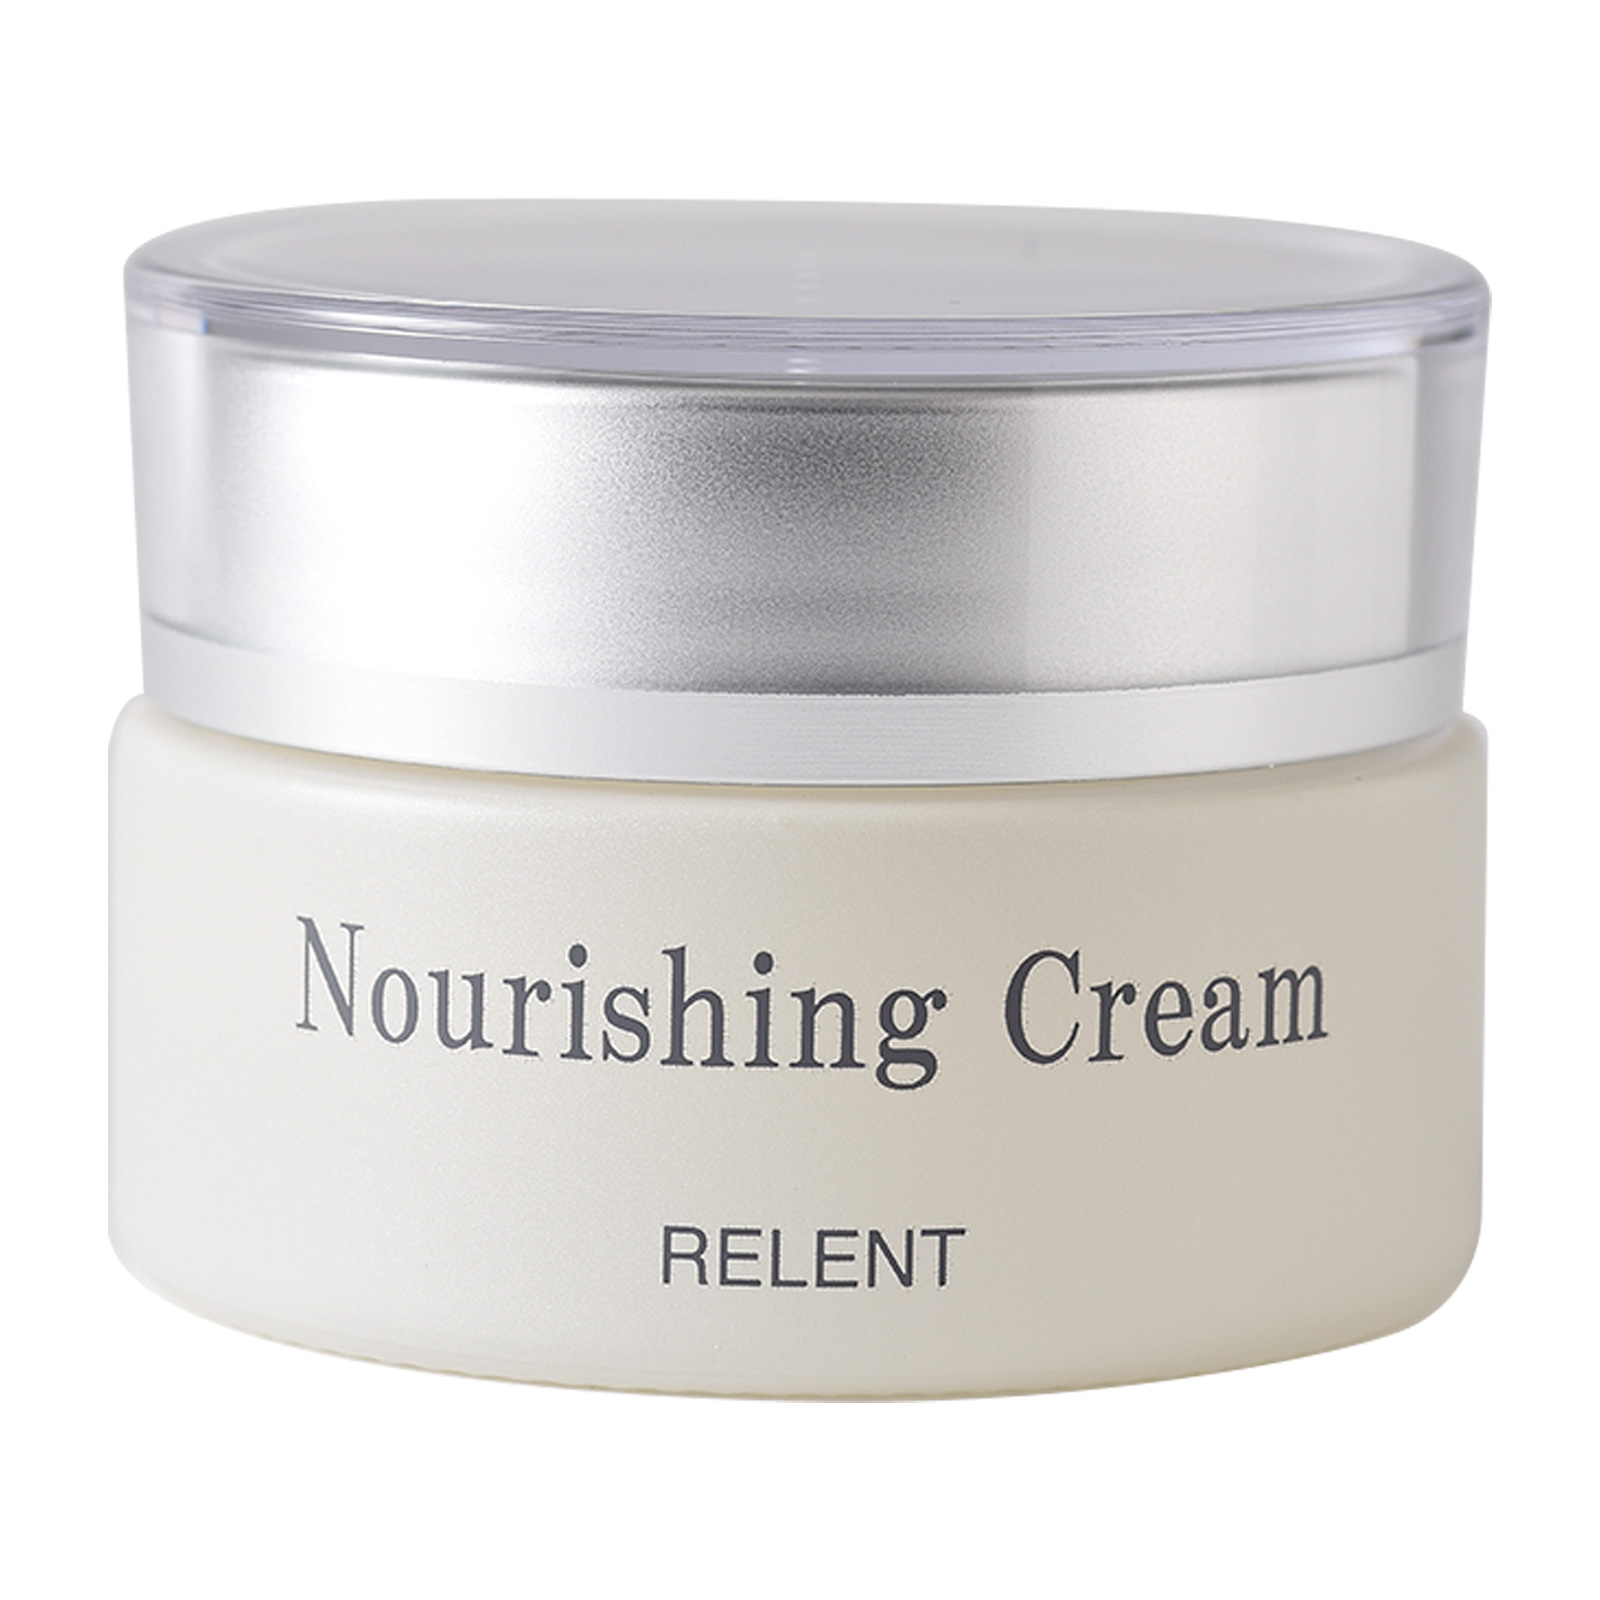 Relent Nourishing Cream. Питательный крем для лица Релент, 22 г